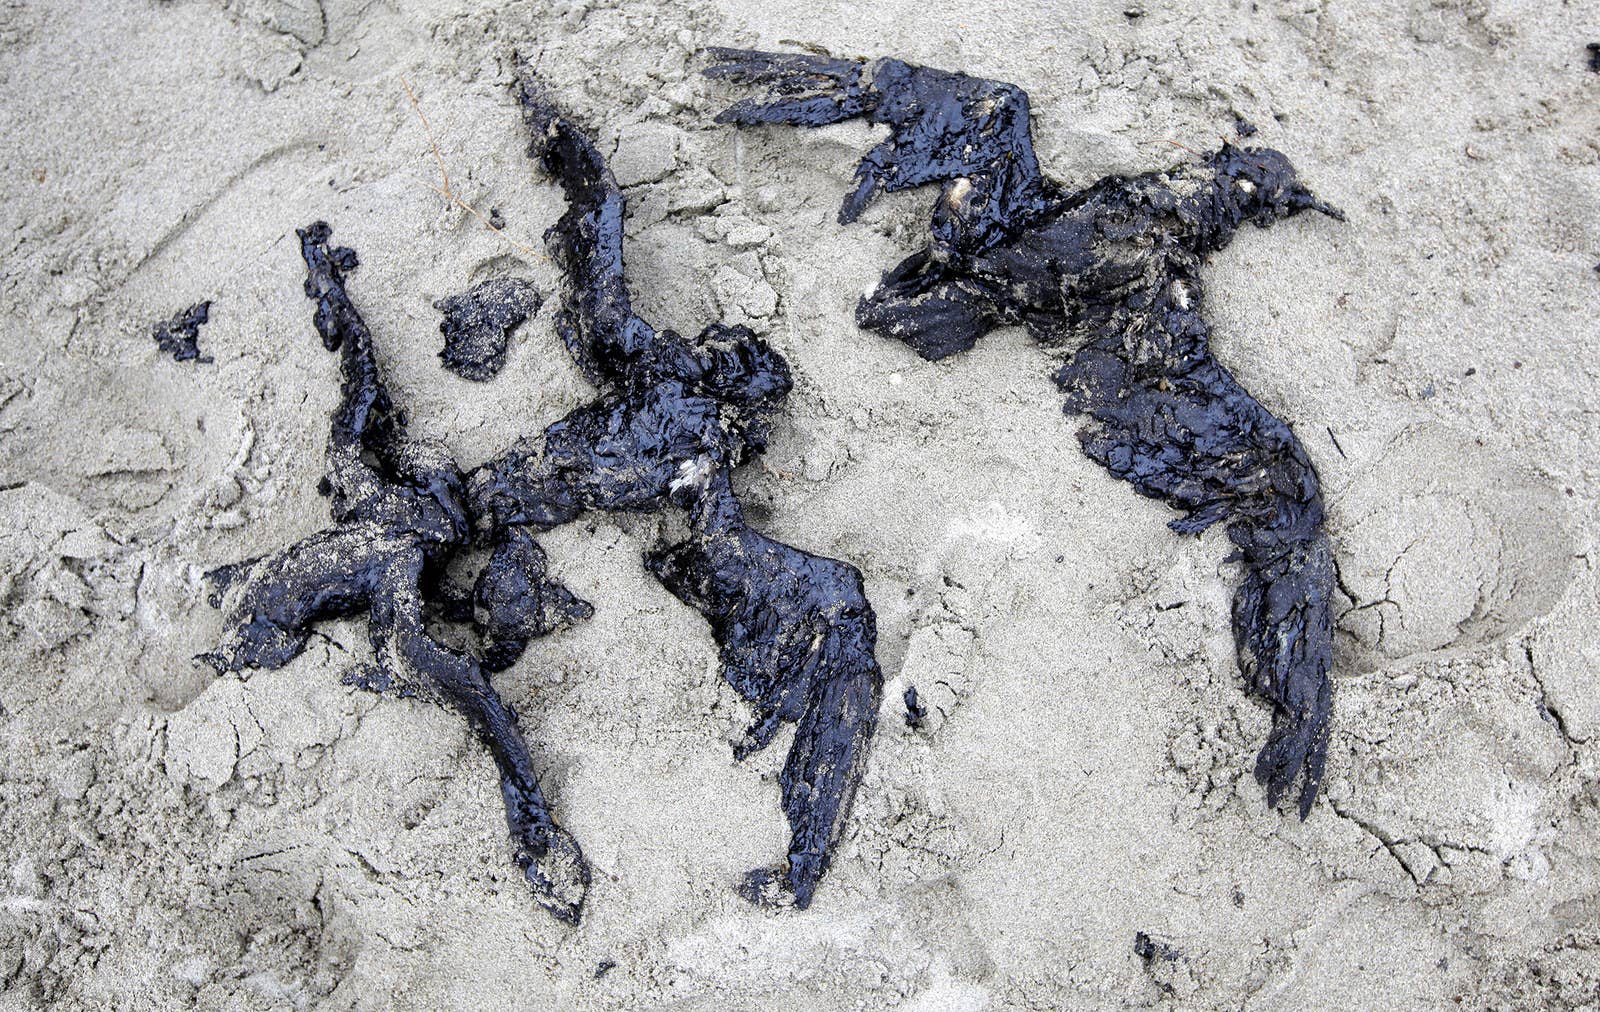 ニュージーランド・パパモアビーチでは運搬船からの原油漏れの影響で死んだ海鳥の死骸が見つかった。(2011年10月12日)